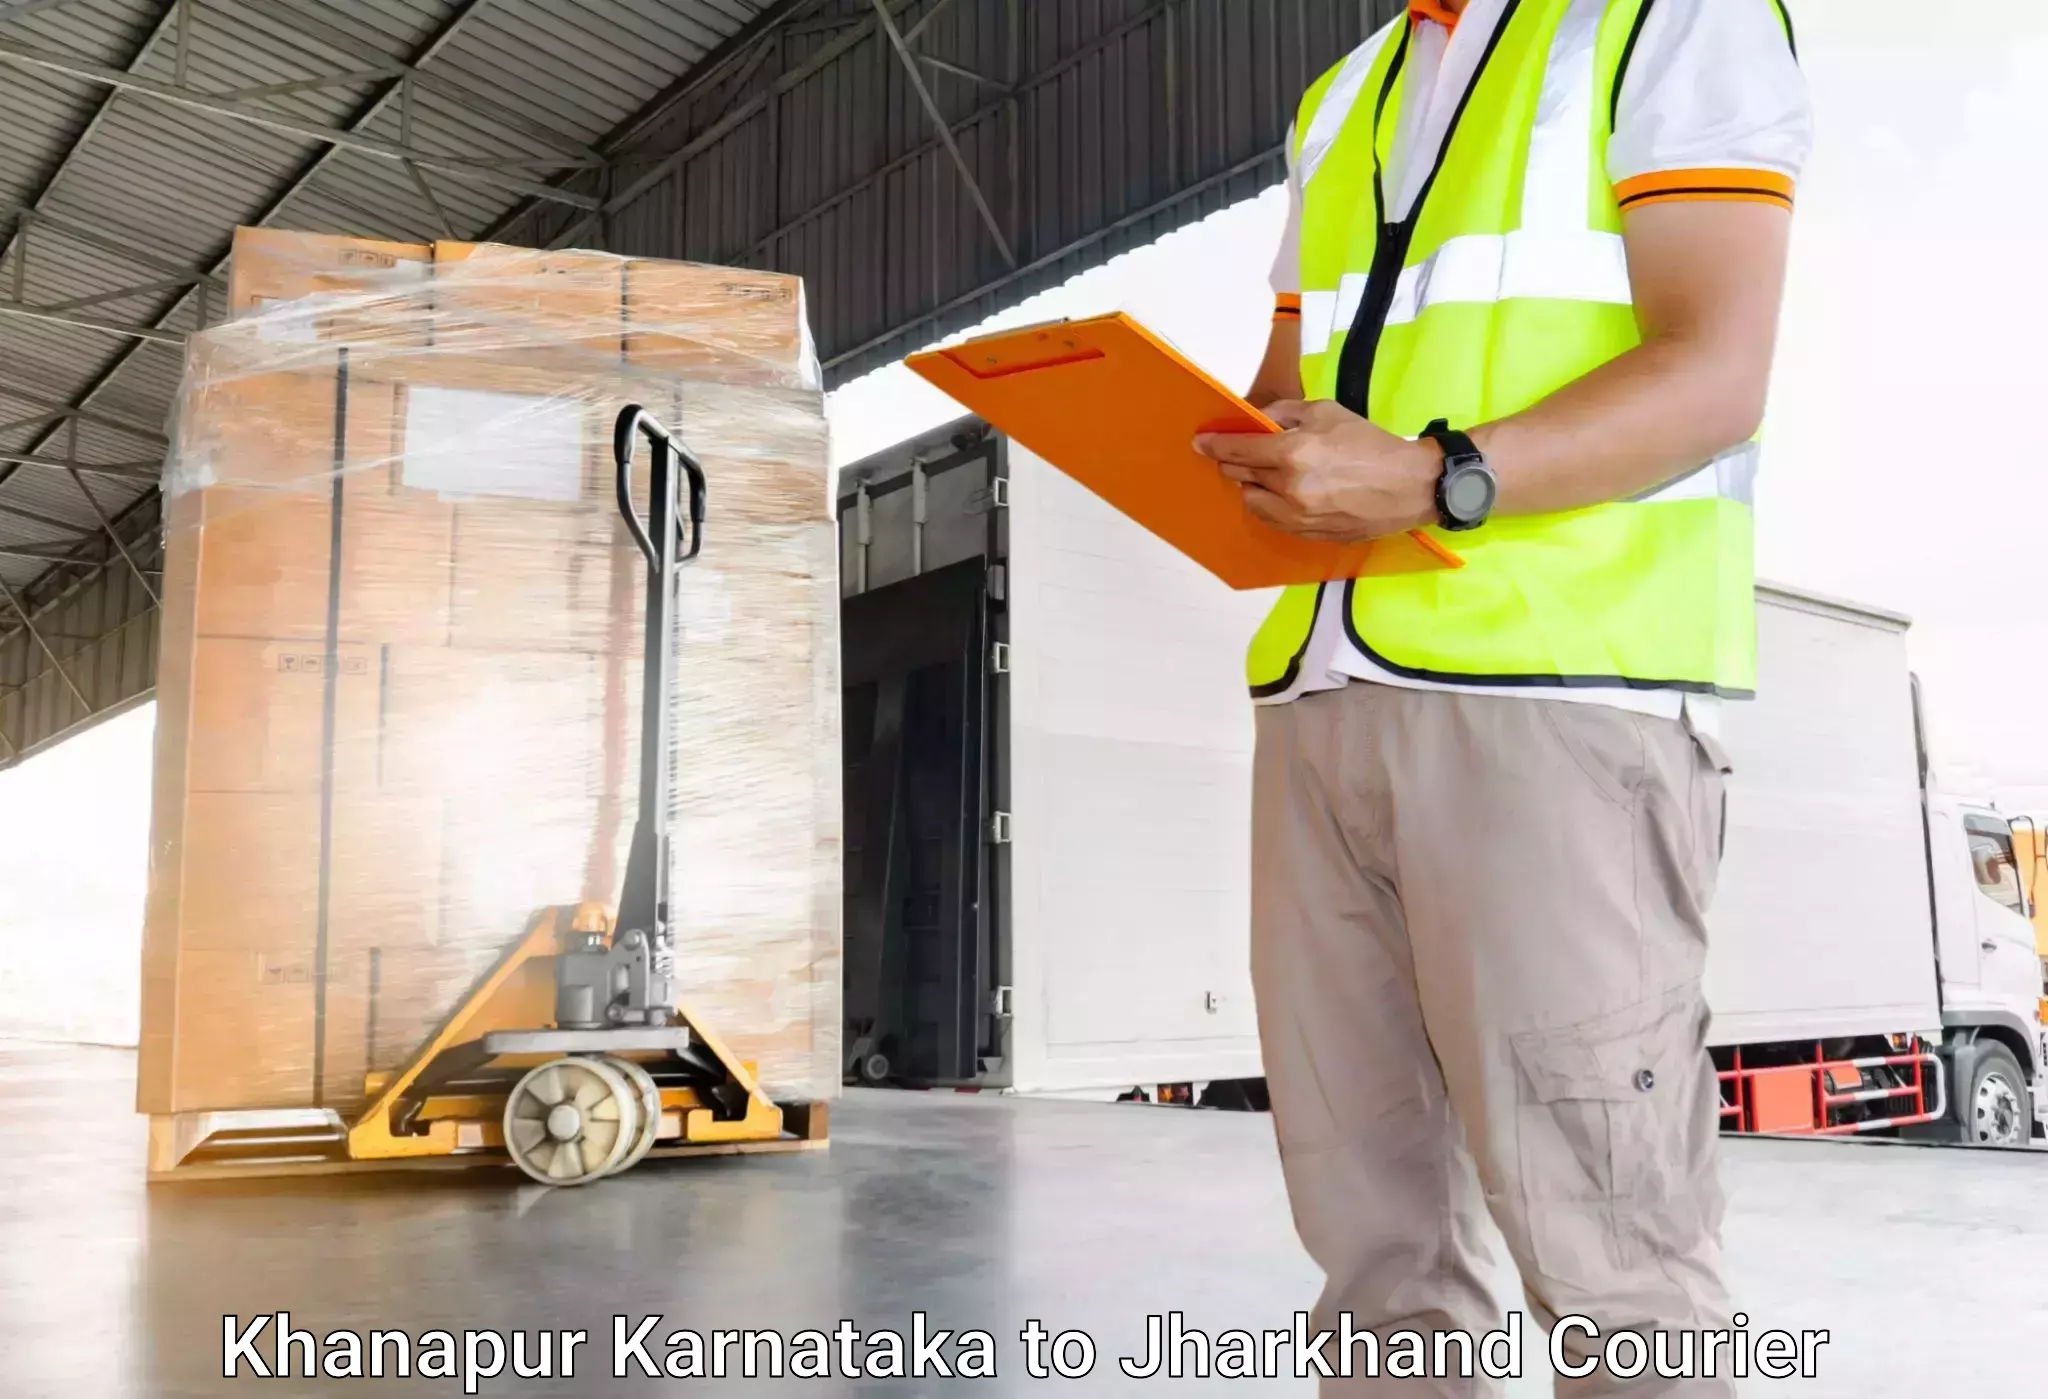 Luggage shipment tracking Khanapur Karnataka to East Singhbhum